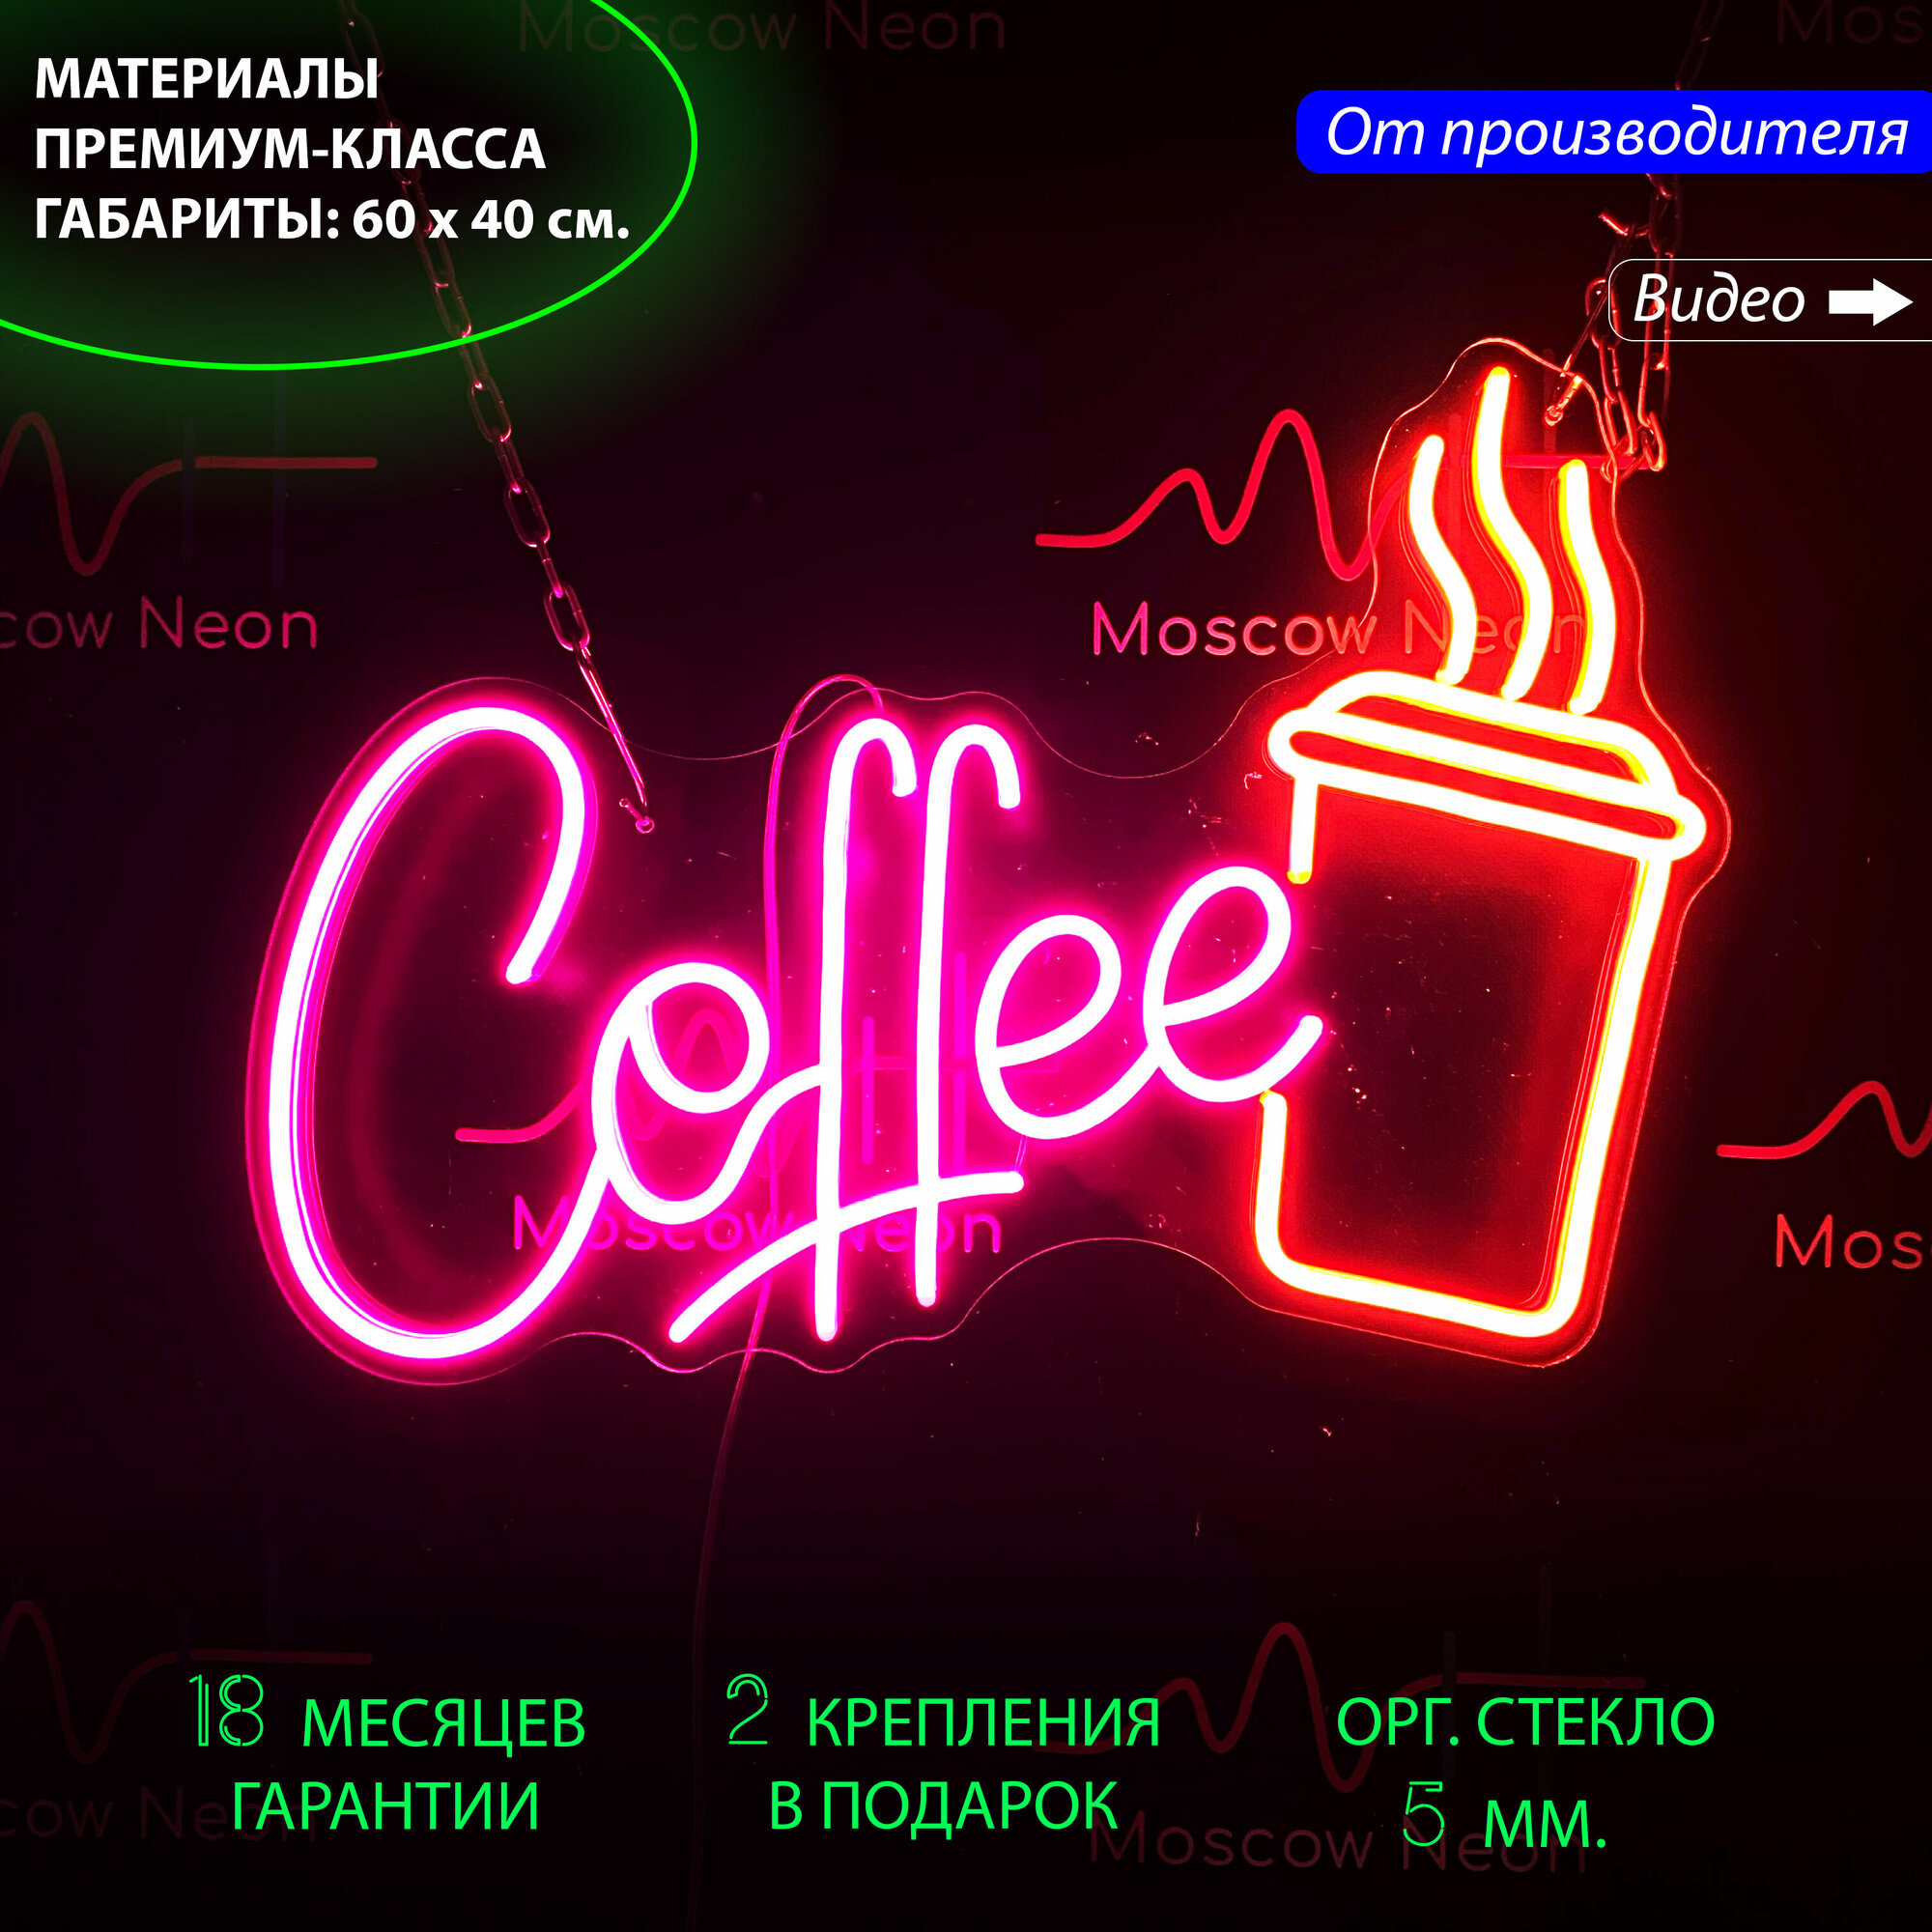 Неоновый светильник / Неоновая светодиодная вывеска на стену / Настенная неоновая лампа, неоновая надпись на стену "Coffee" для кафе и кофейни, 60 х 40 см.